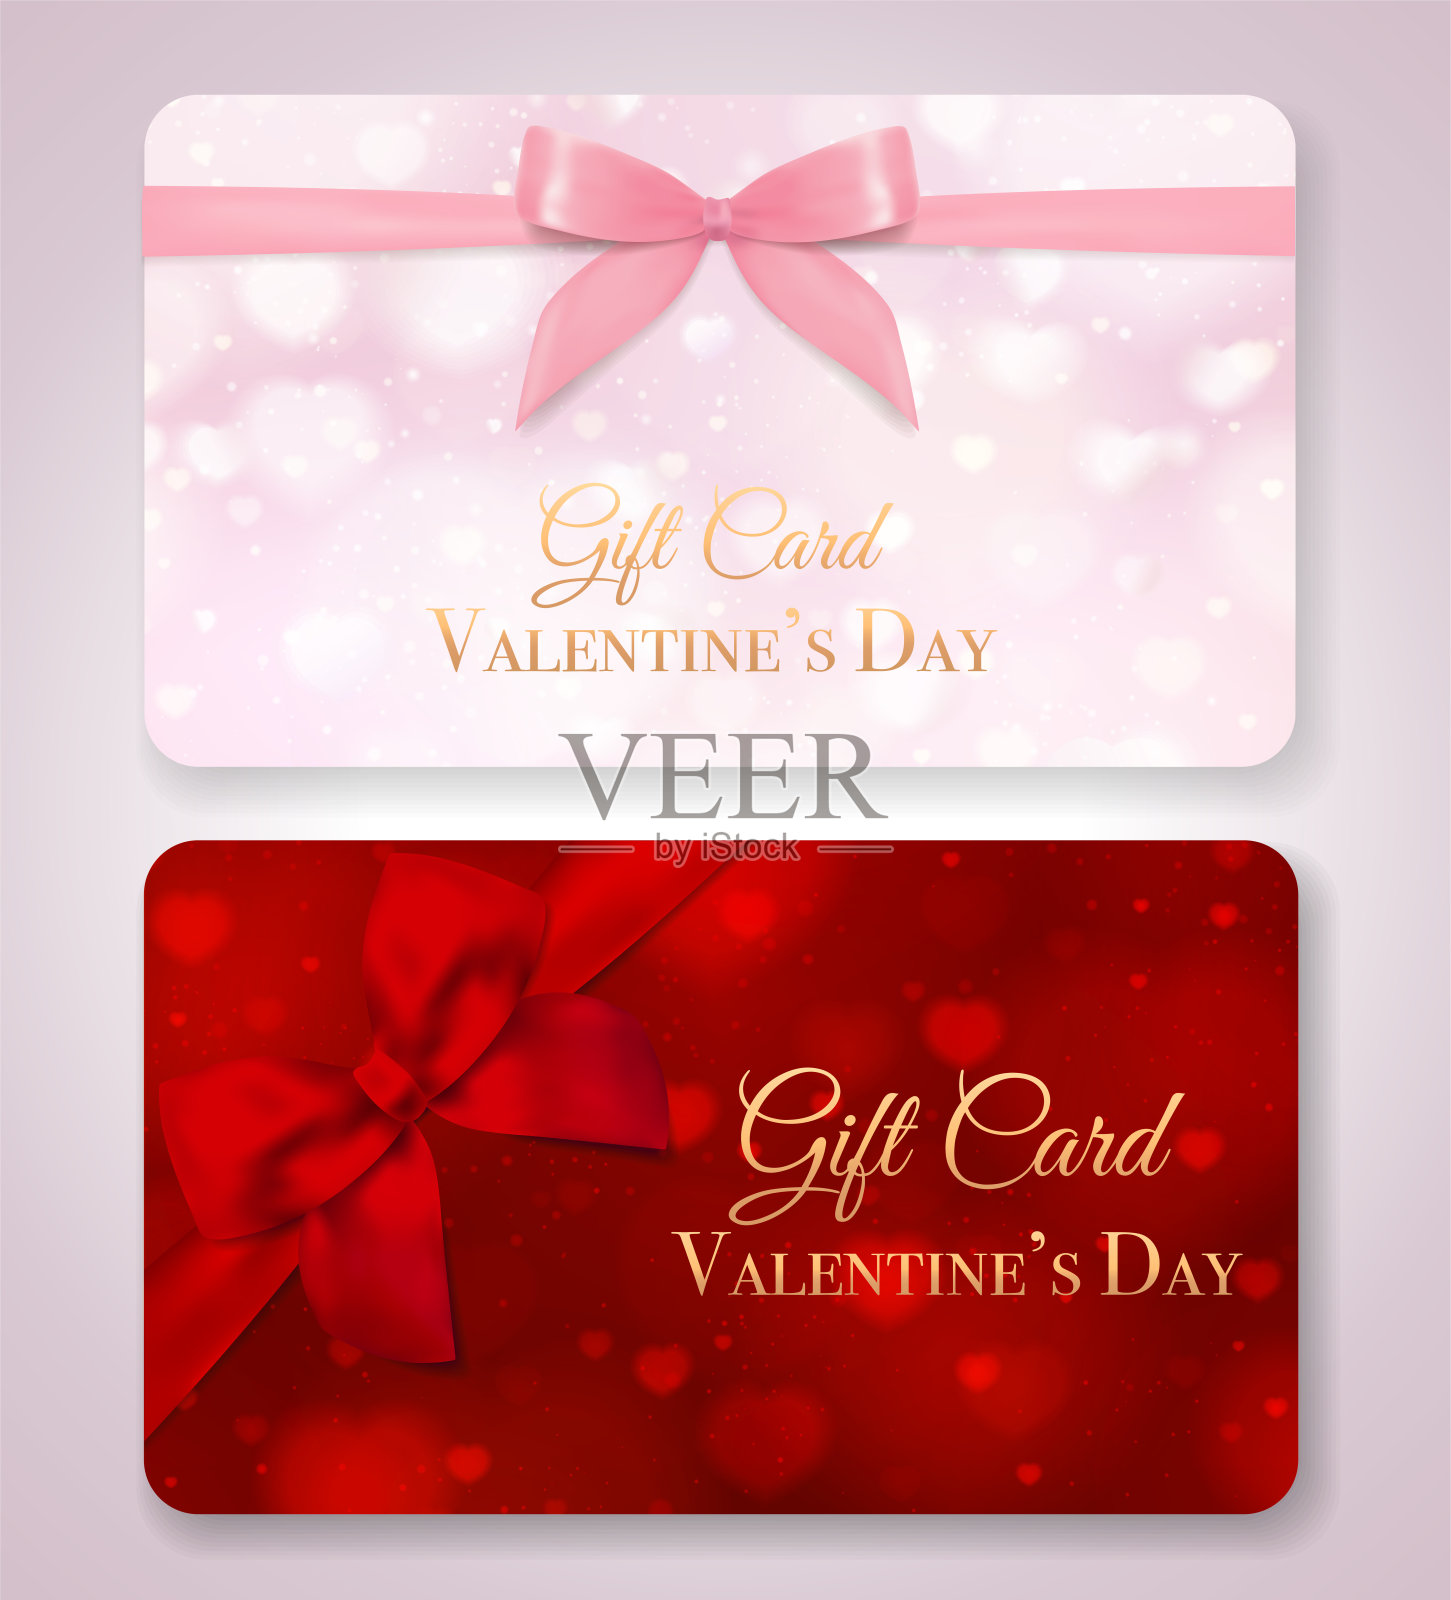 礼品卡与红色的心形背景和蝴蝶结，粉红色的丝带插画图片素材